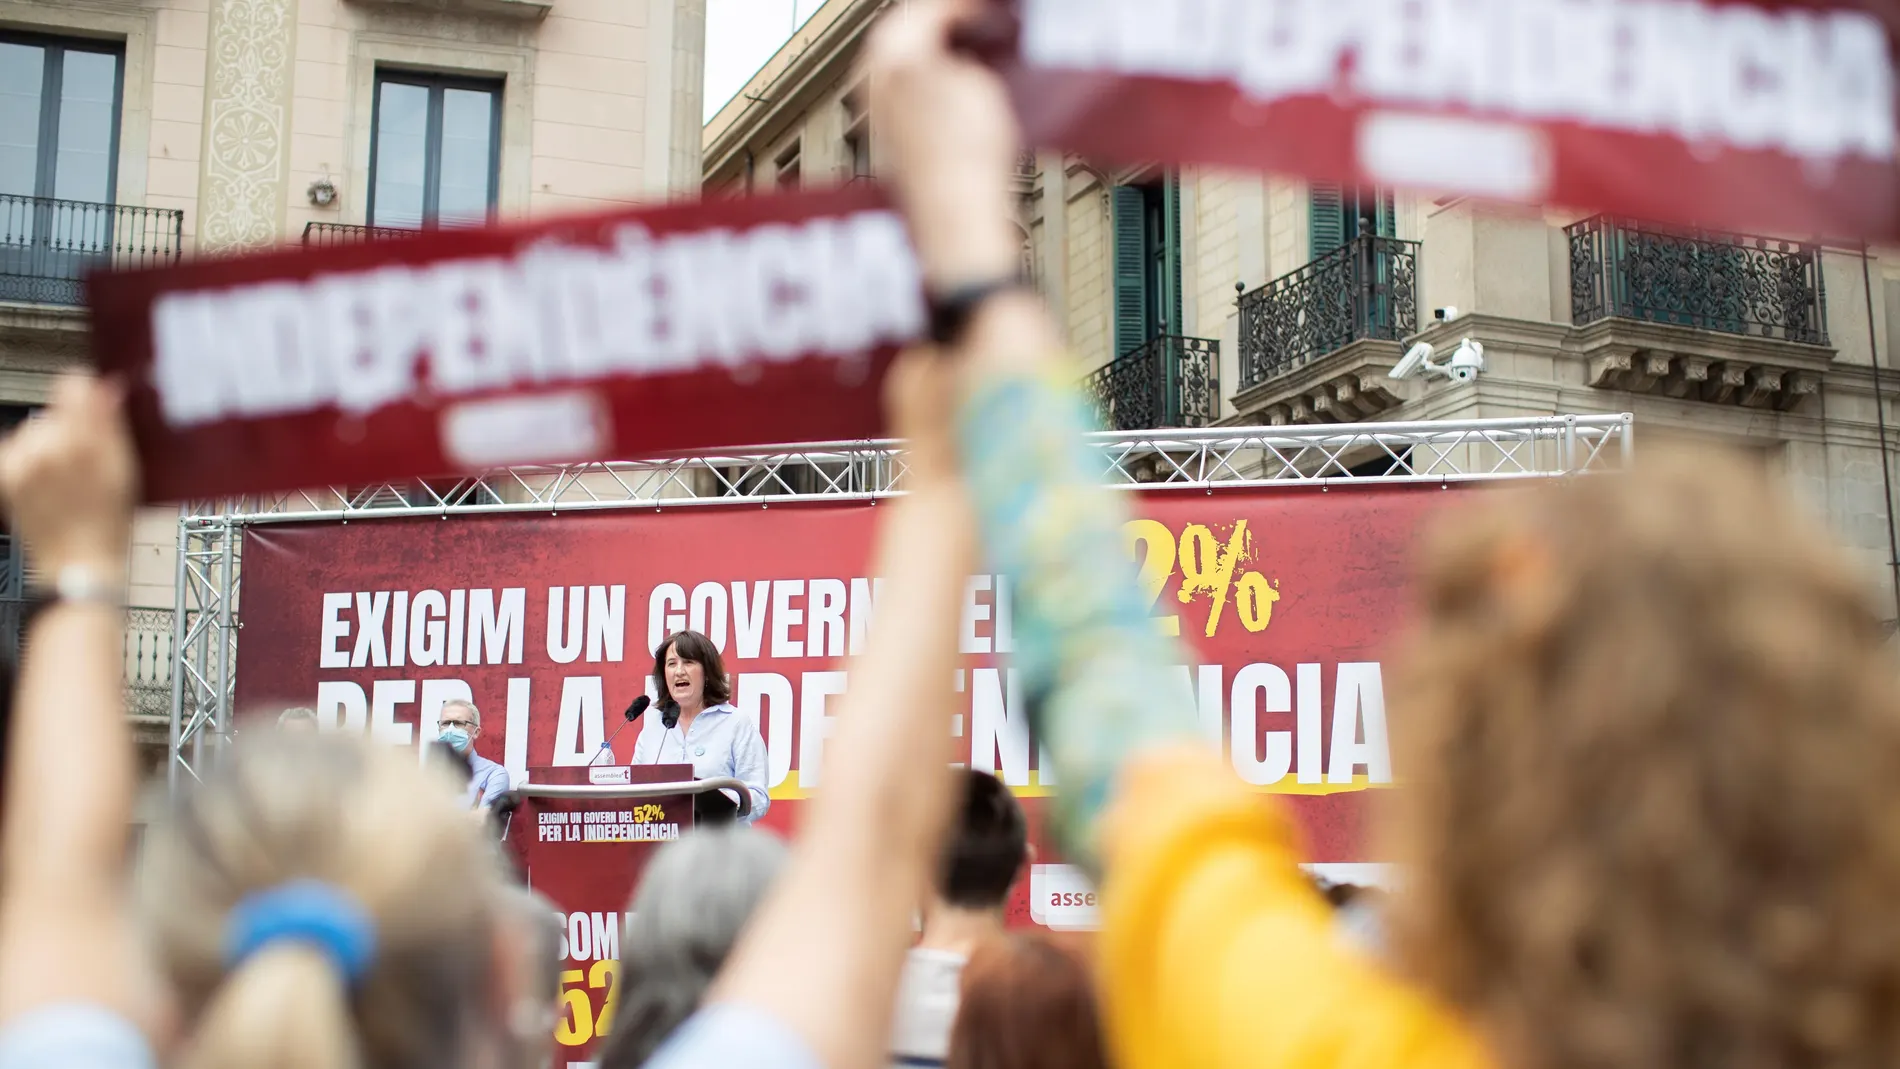 La presidenta de la Assemblea Nacional Catalana (ANC), Elisenda Paluzie, durante la convocatoria de una concentración en la plaza Sant Jaume de Barcelona, frente al Palau de la Generalitat